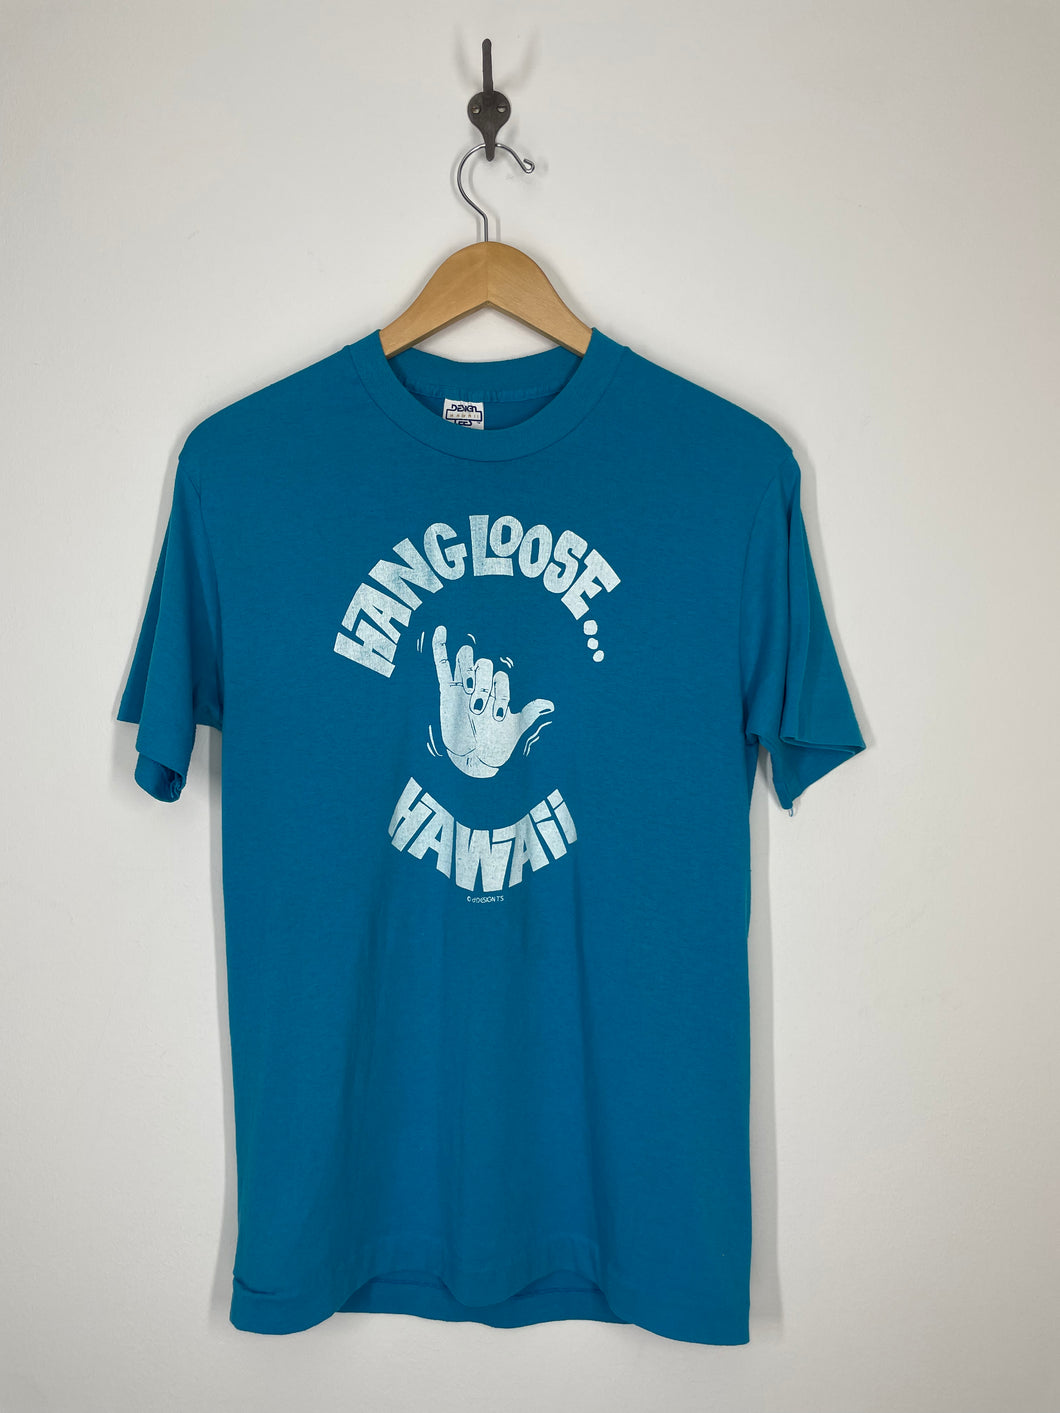 Hang Loose Hawaii Souvenir Tourist T Shirt - Design Tees - L